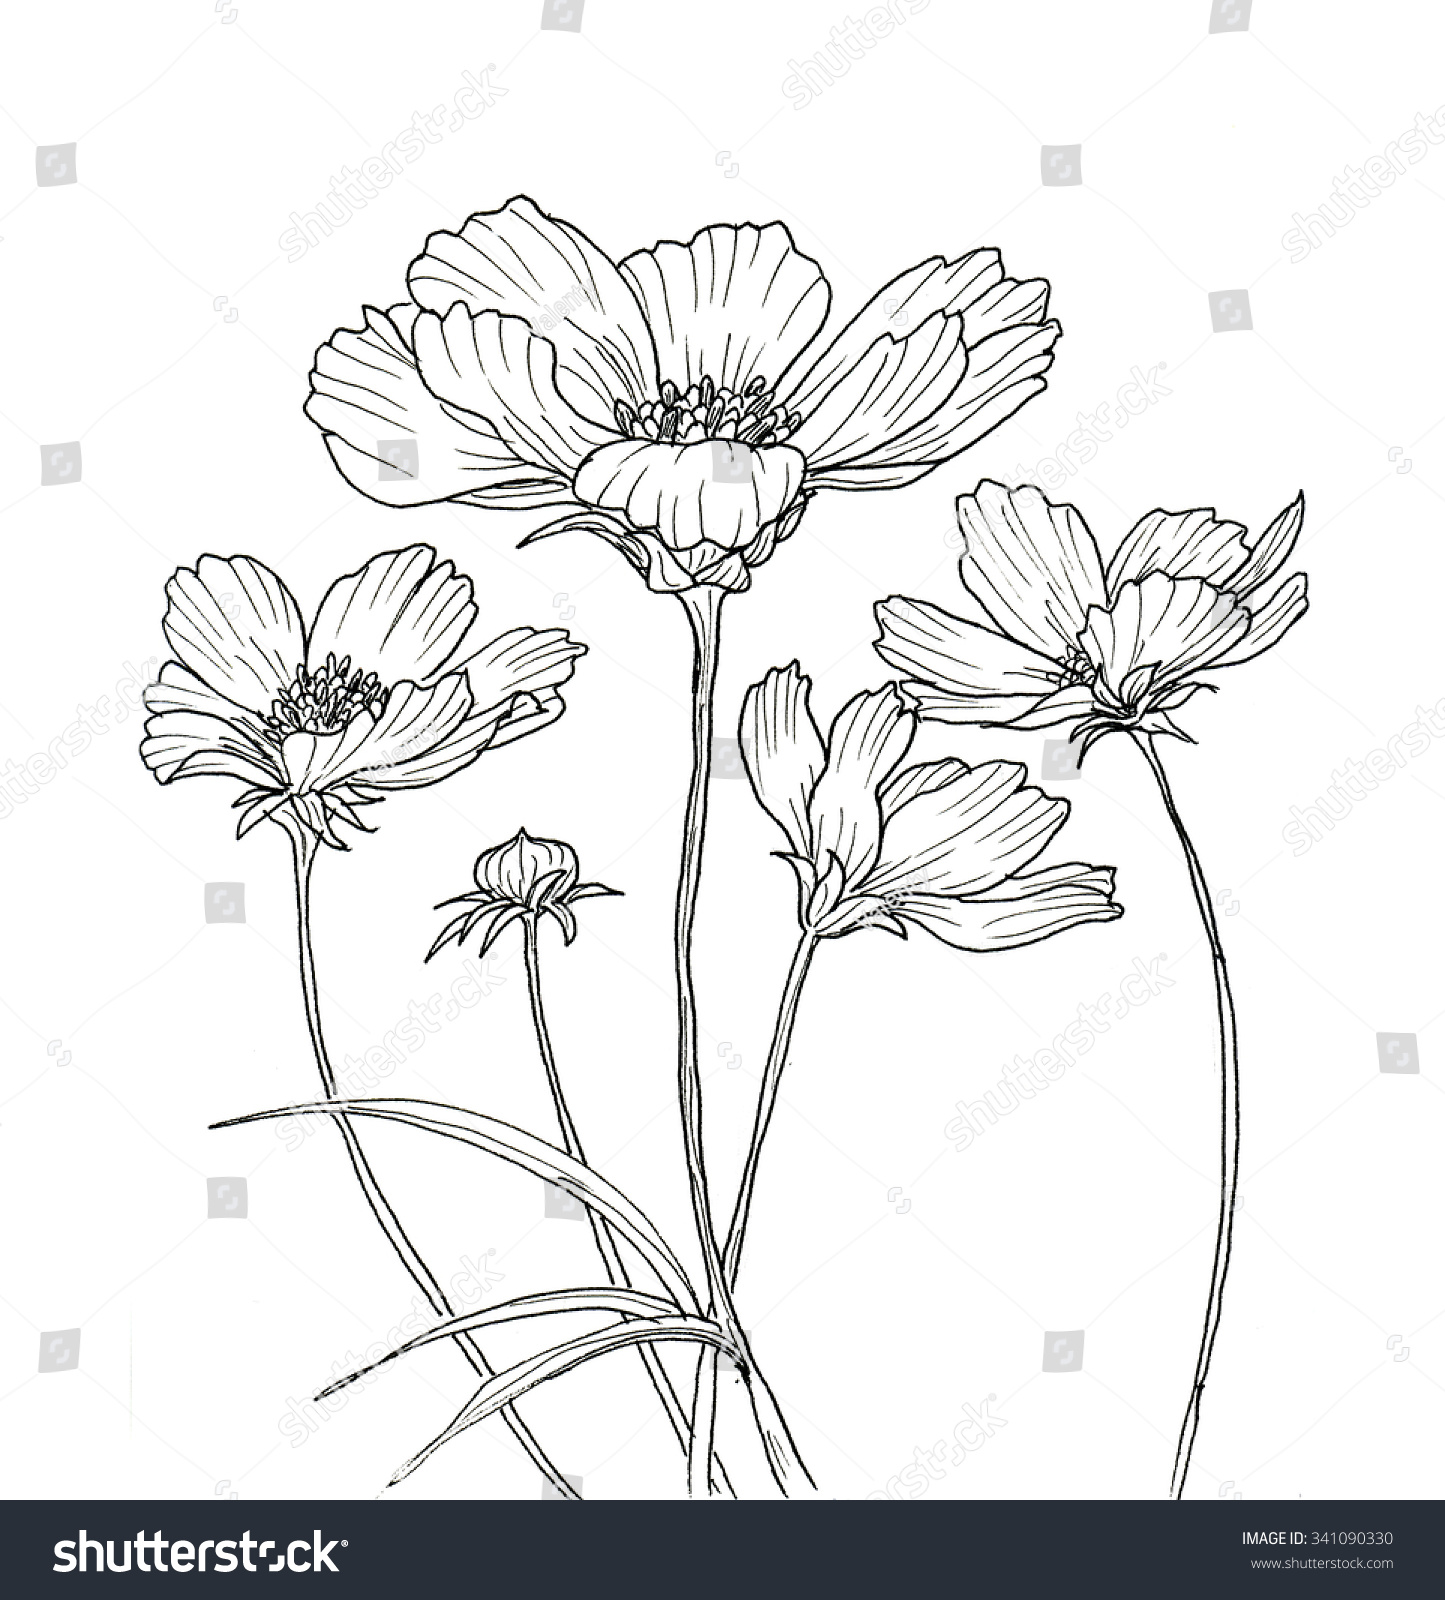 コスモスの花の墨絵 白い背景に黒い輪郭 のイラスト素材